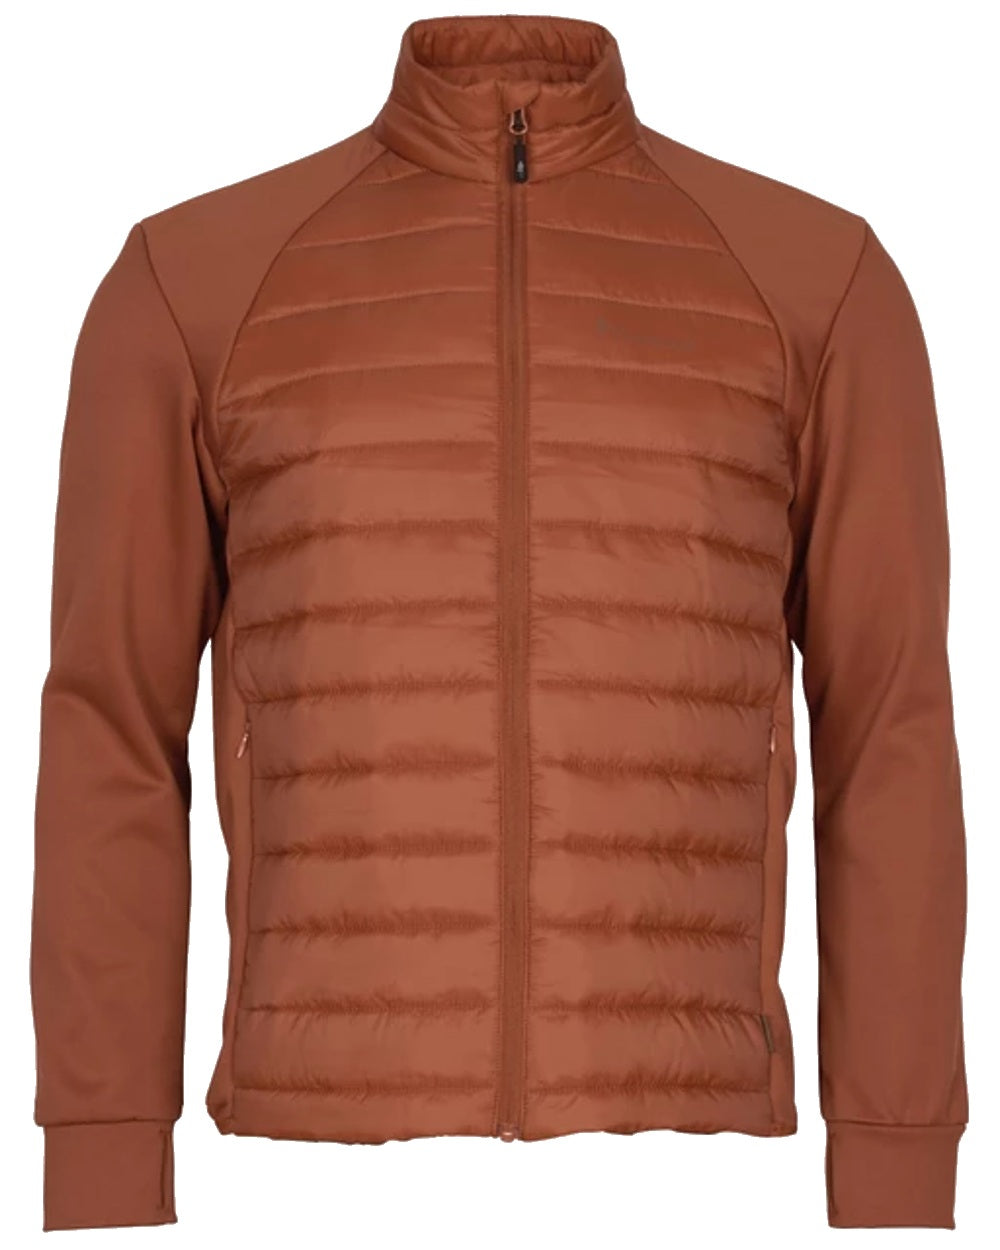 Pinewood Mens Finnveden Hybrid Power Fleece Jacket in Terracotta 